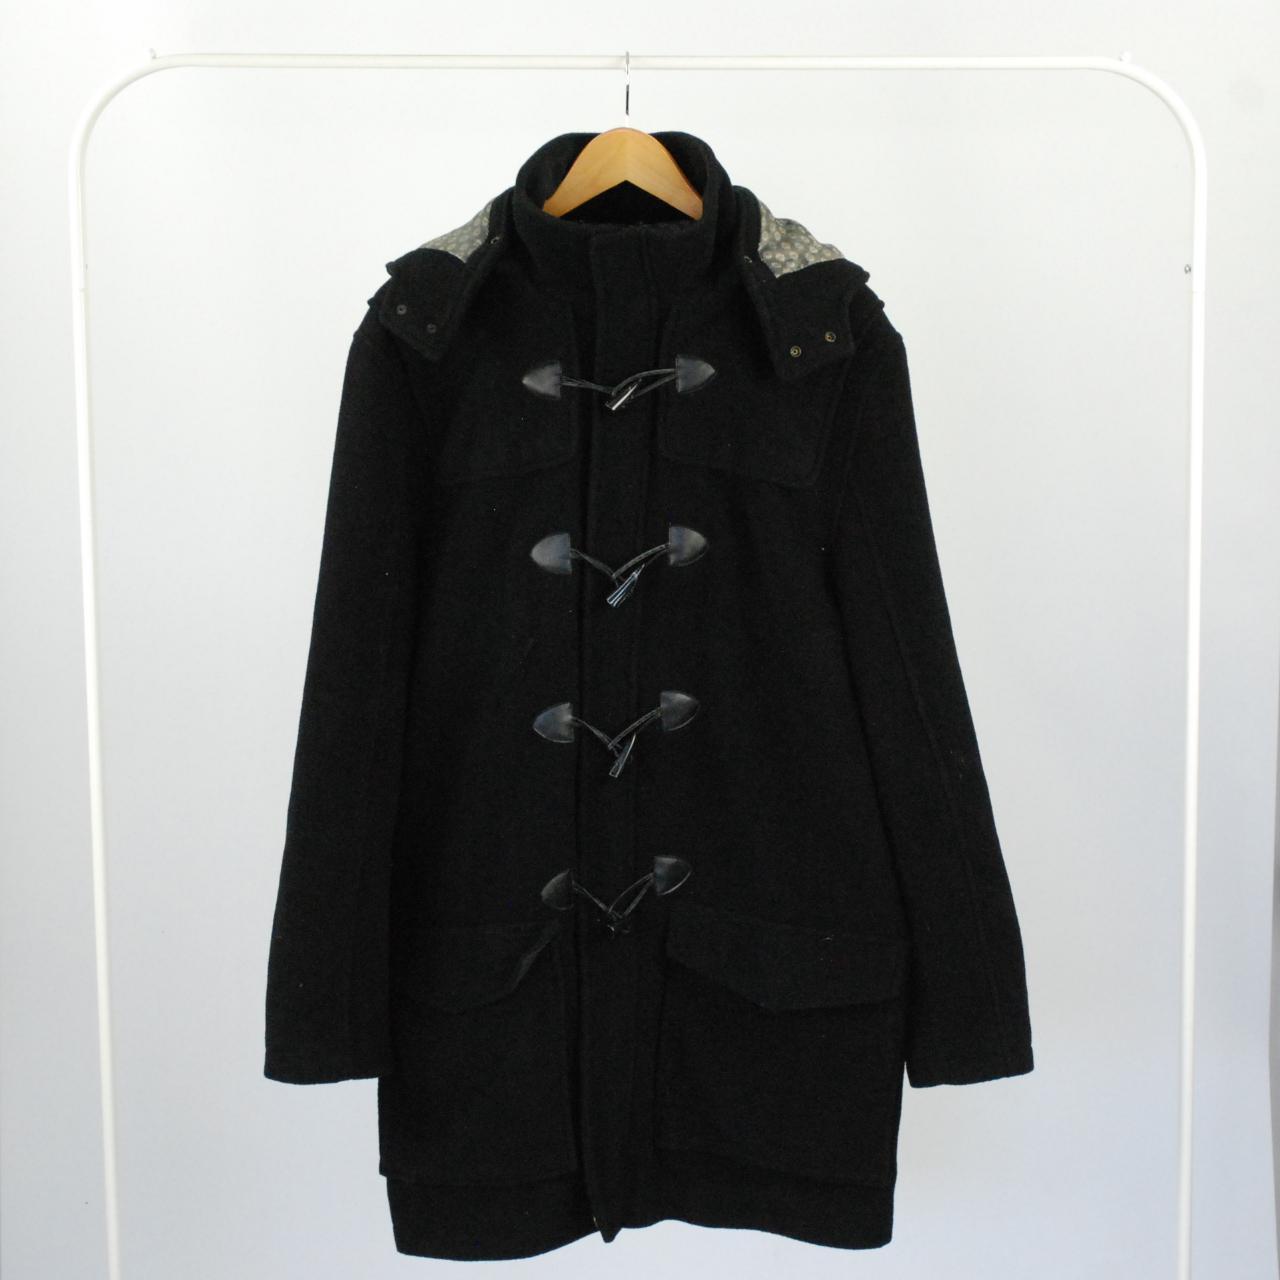 6000* Vintage Lakeland men's duffle coat in... - Depop